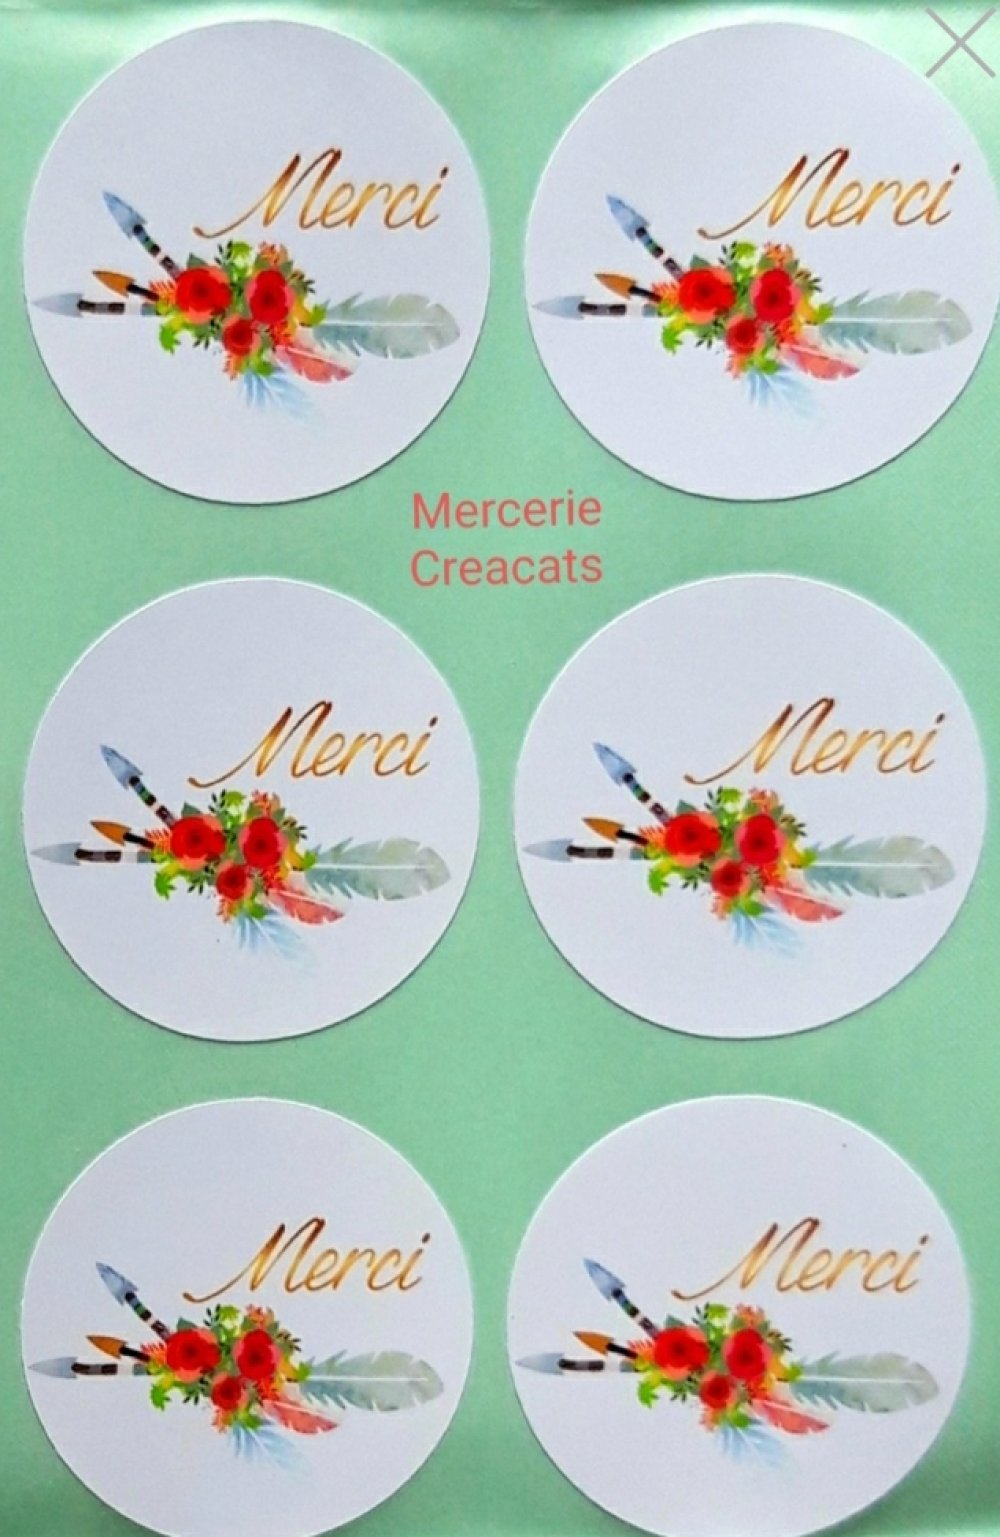 X 10 étiquettes autocollantes rondes stickers papier  joyeux noël